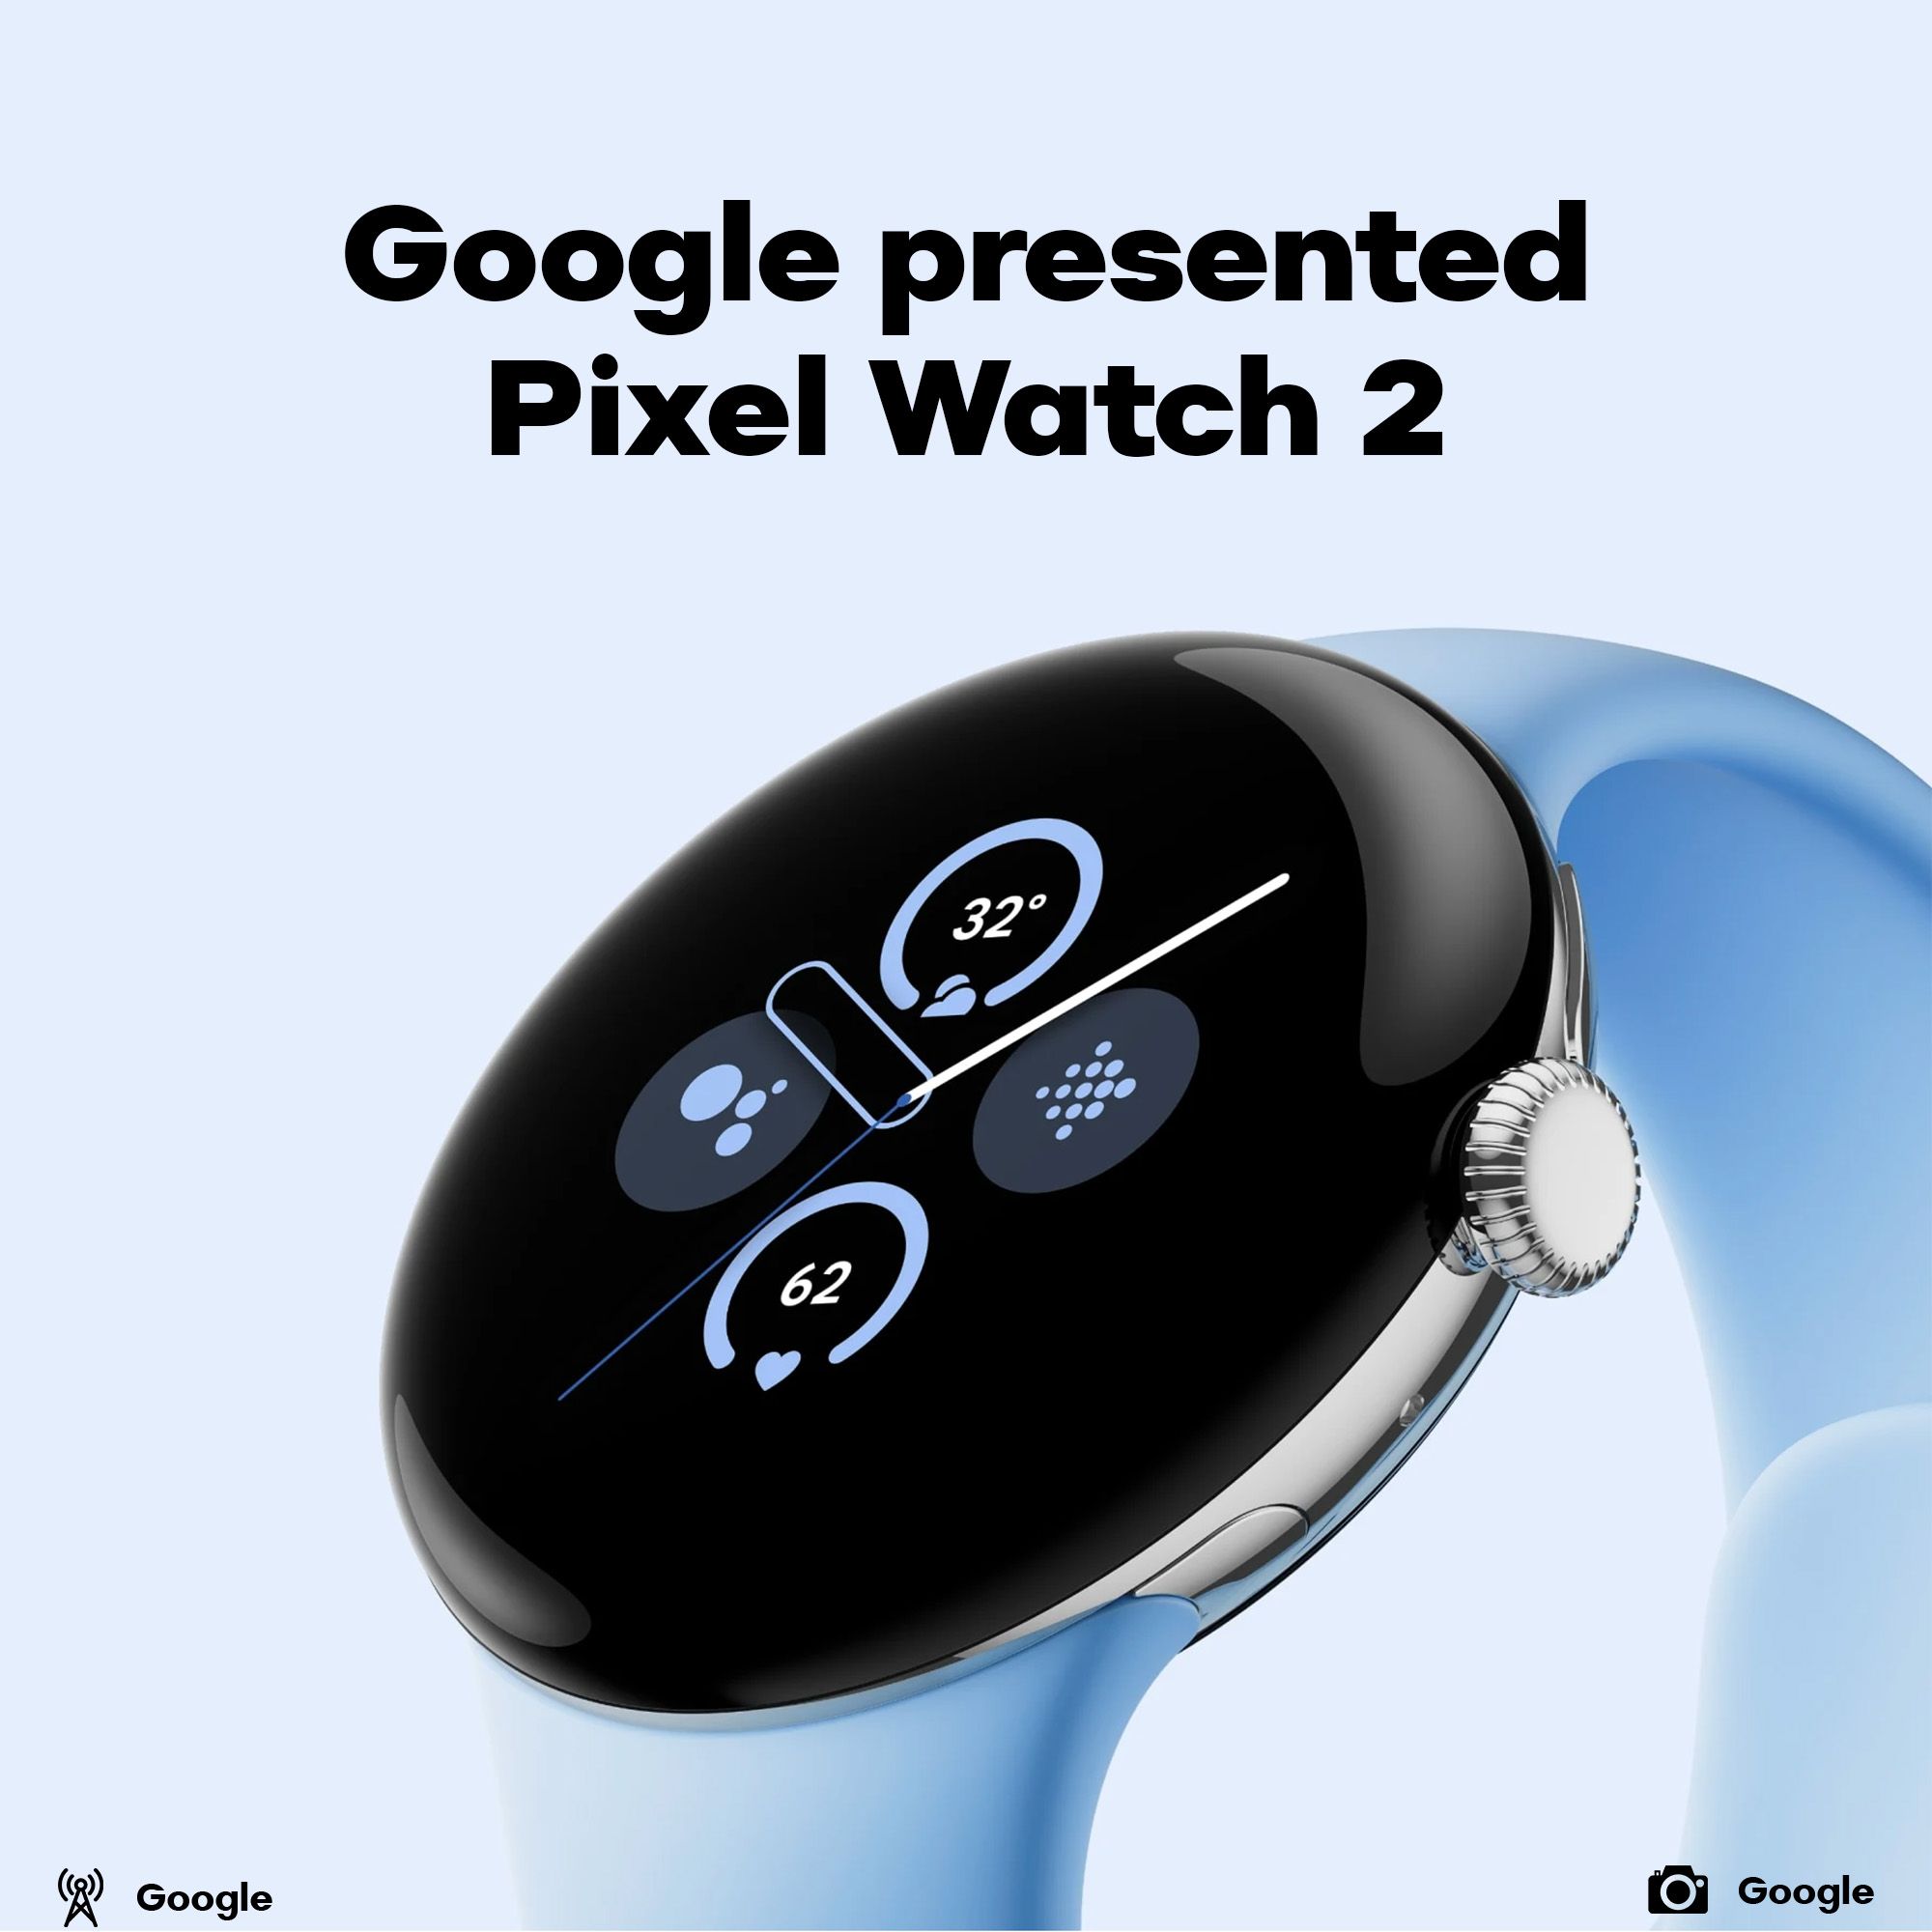 Pixel Watch 2 presented